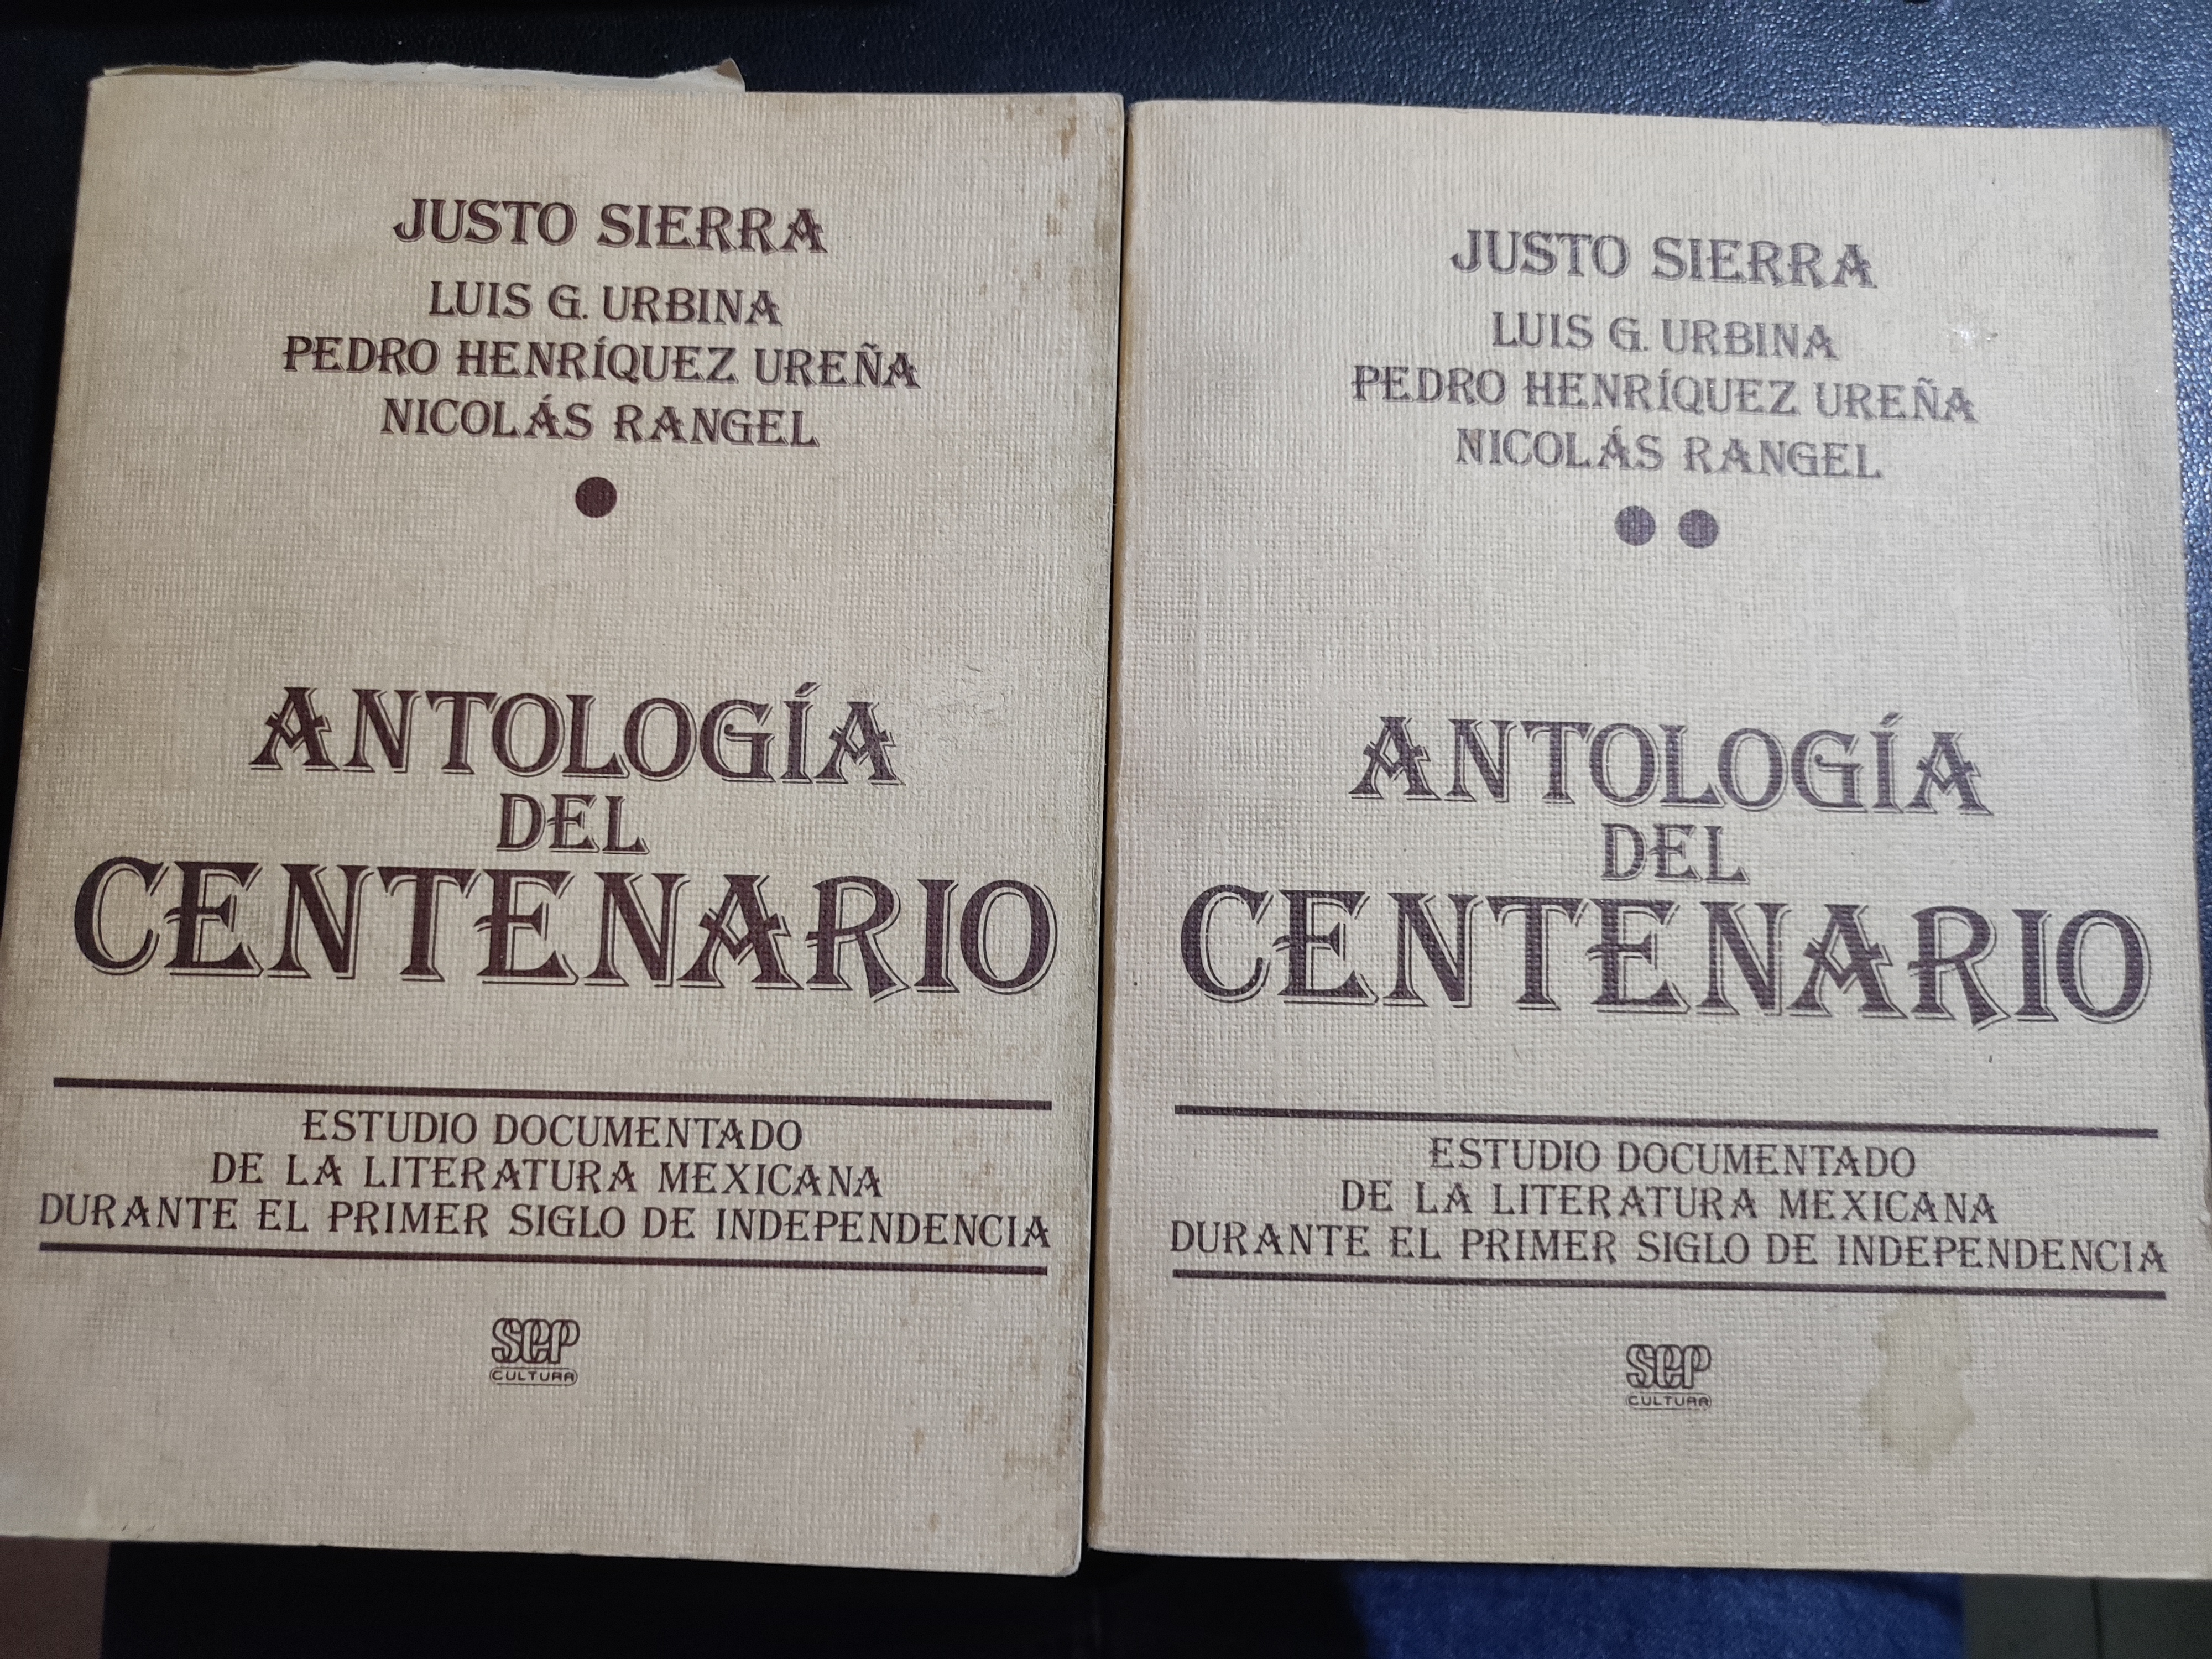  Antología del centenario General